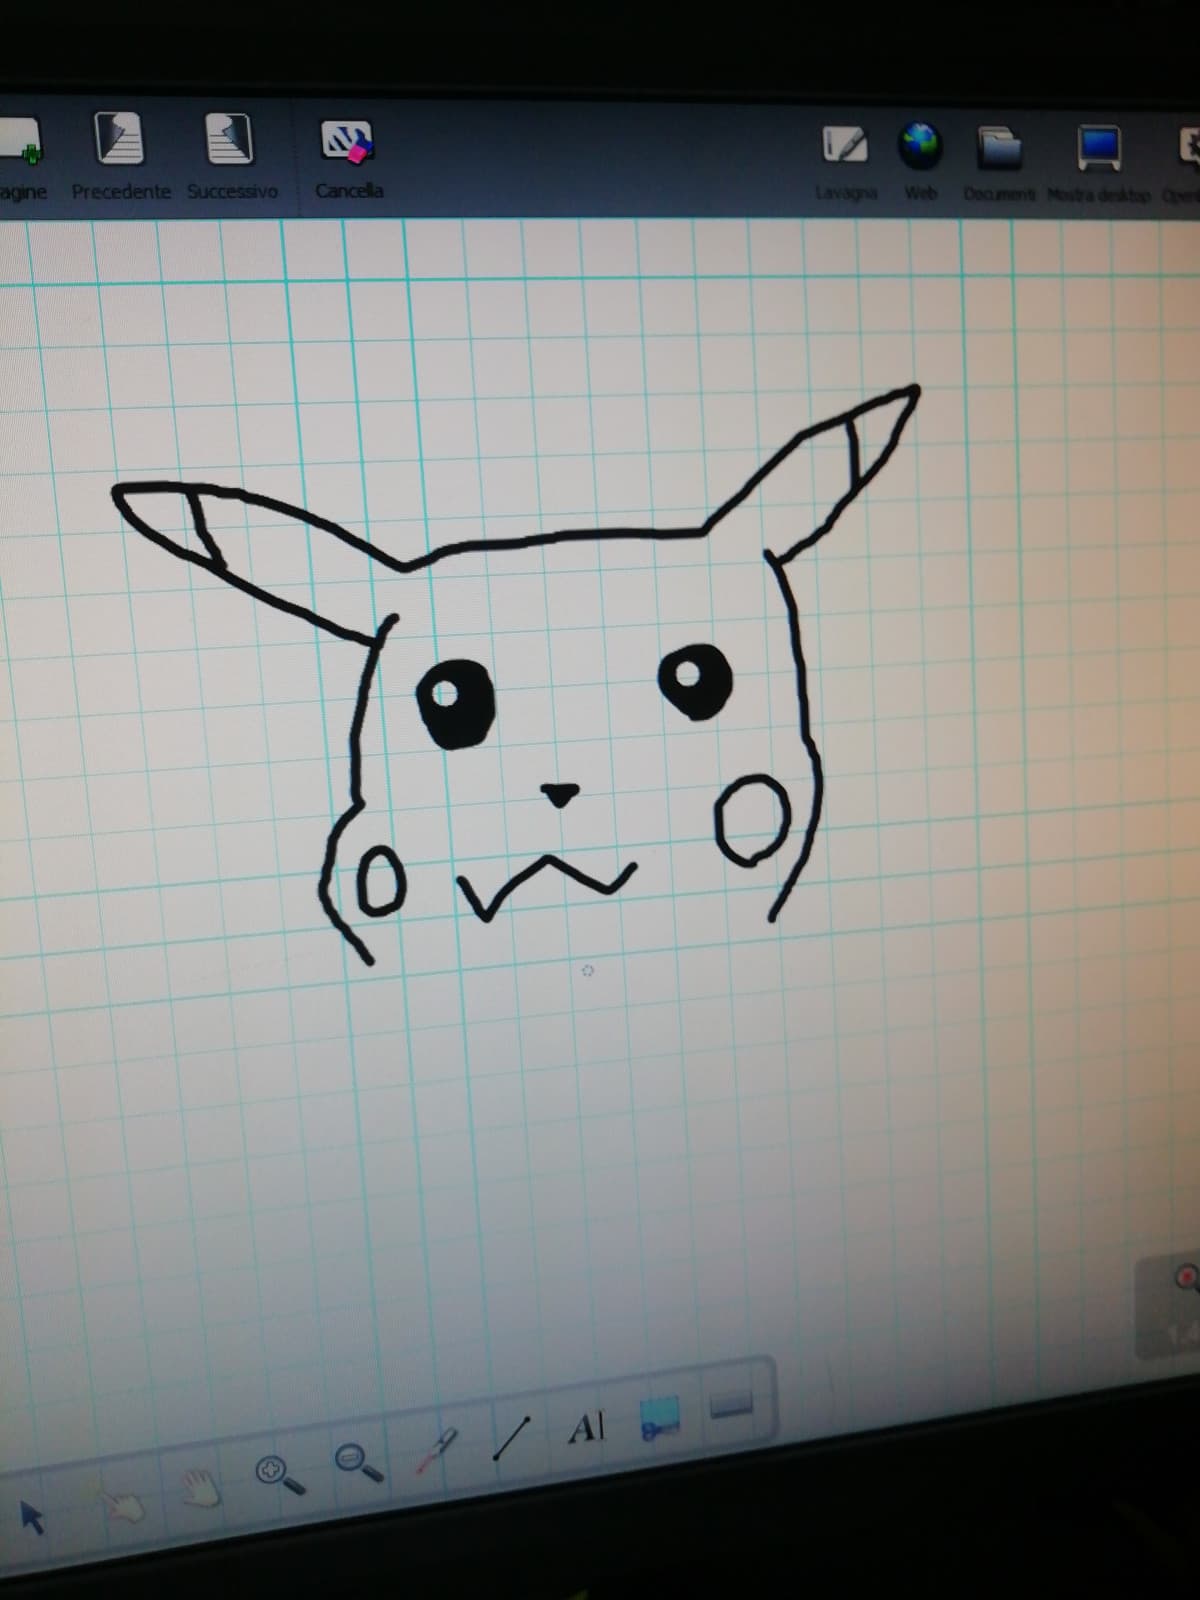 E fu così che invece di prendere appunti mi misi a disegnare un pikachu orrendo e sproporzionato 